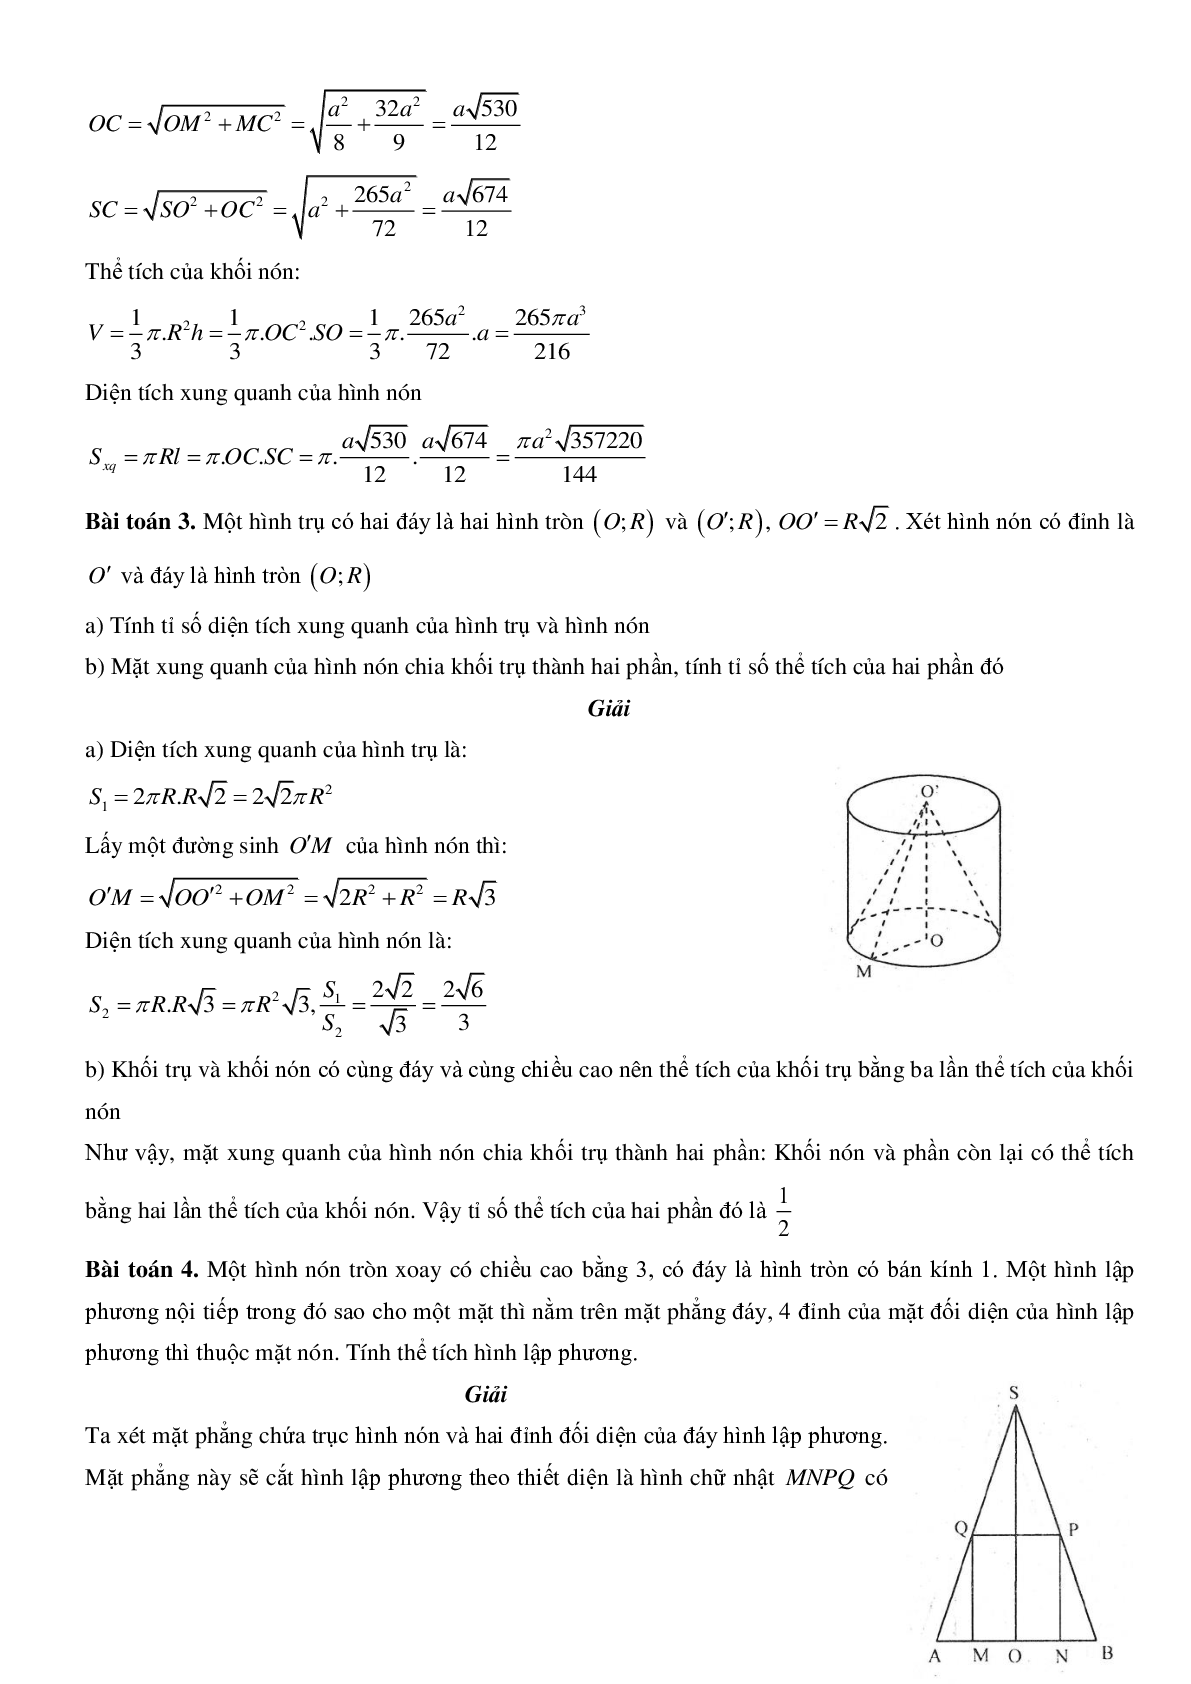 Mặt nón - Hình nón - Khối nón - Ôn thi THPT QG môn toán (trang 8)